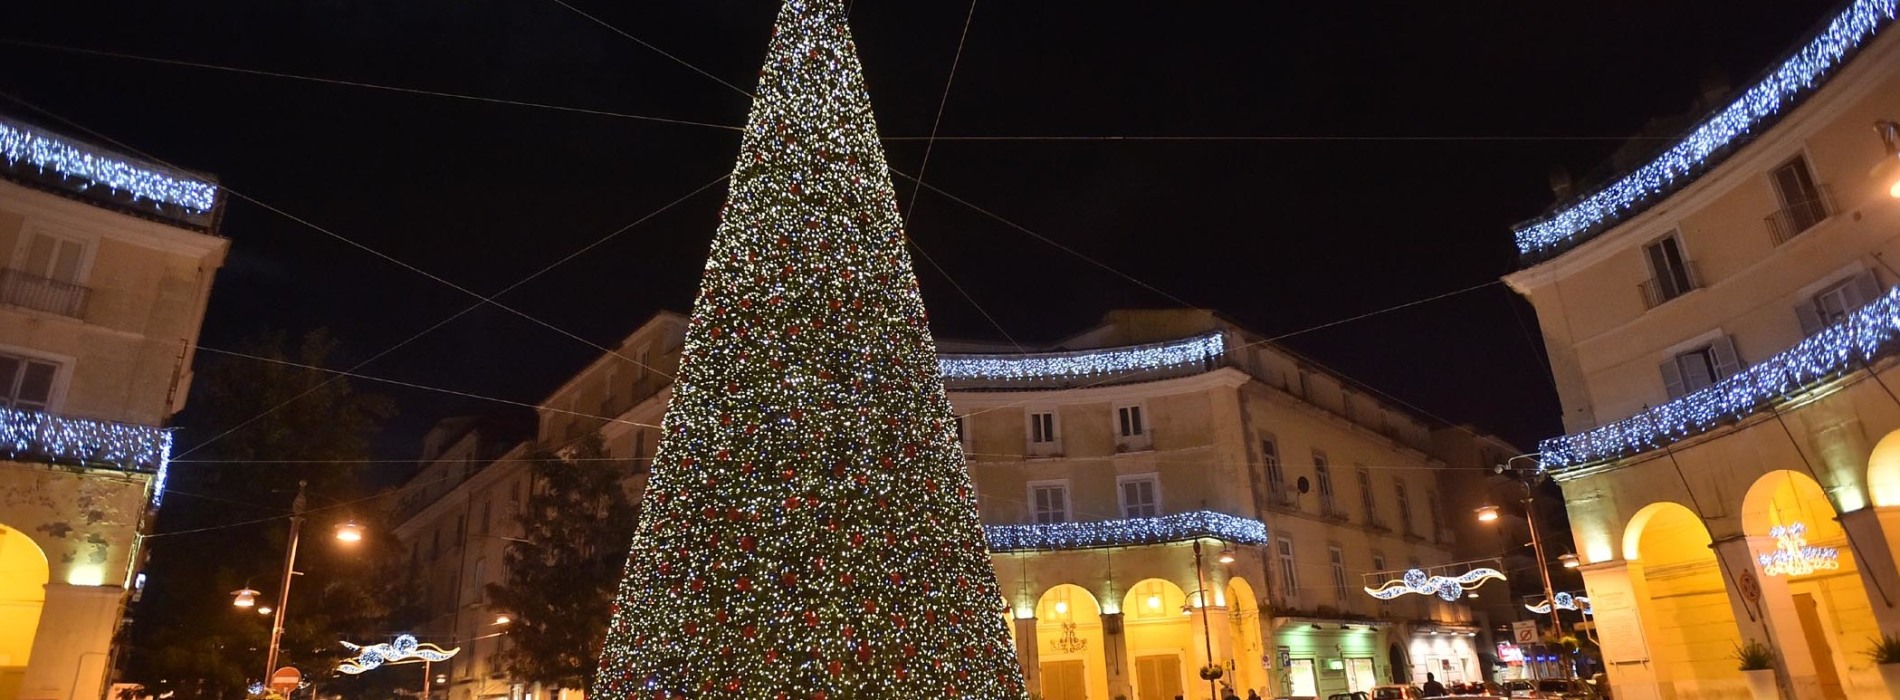 Natale a Caserta, si accendono le mille luci del grande albero